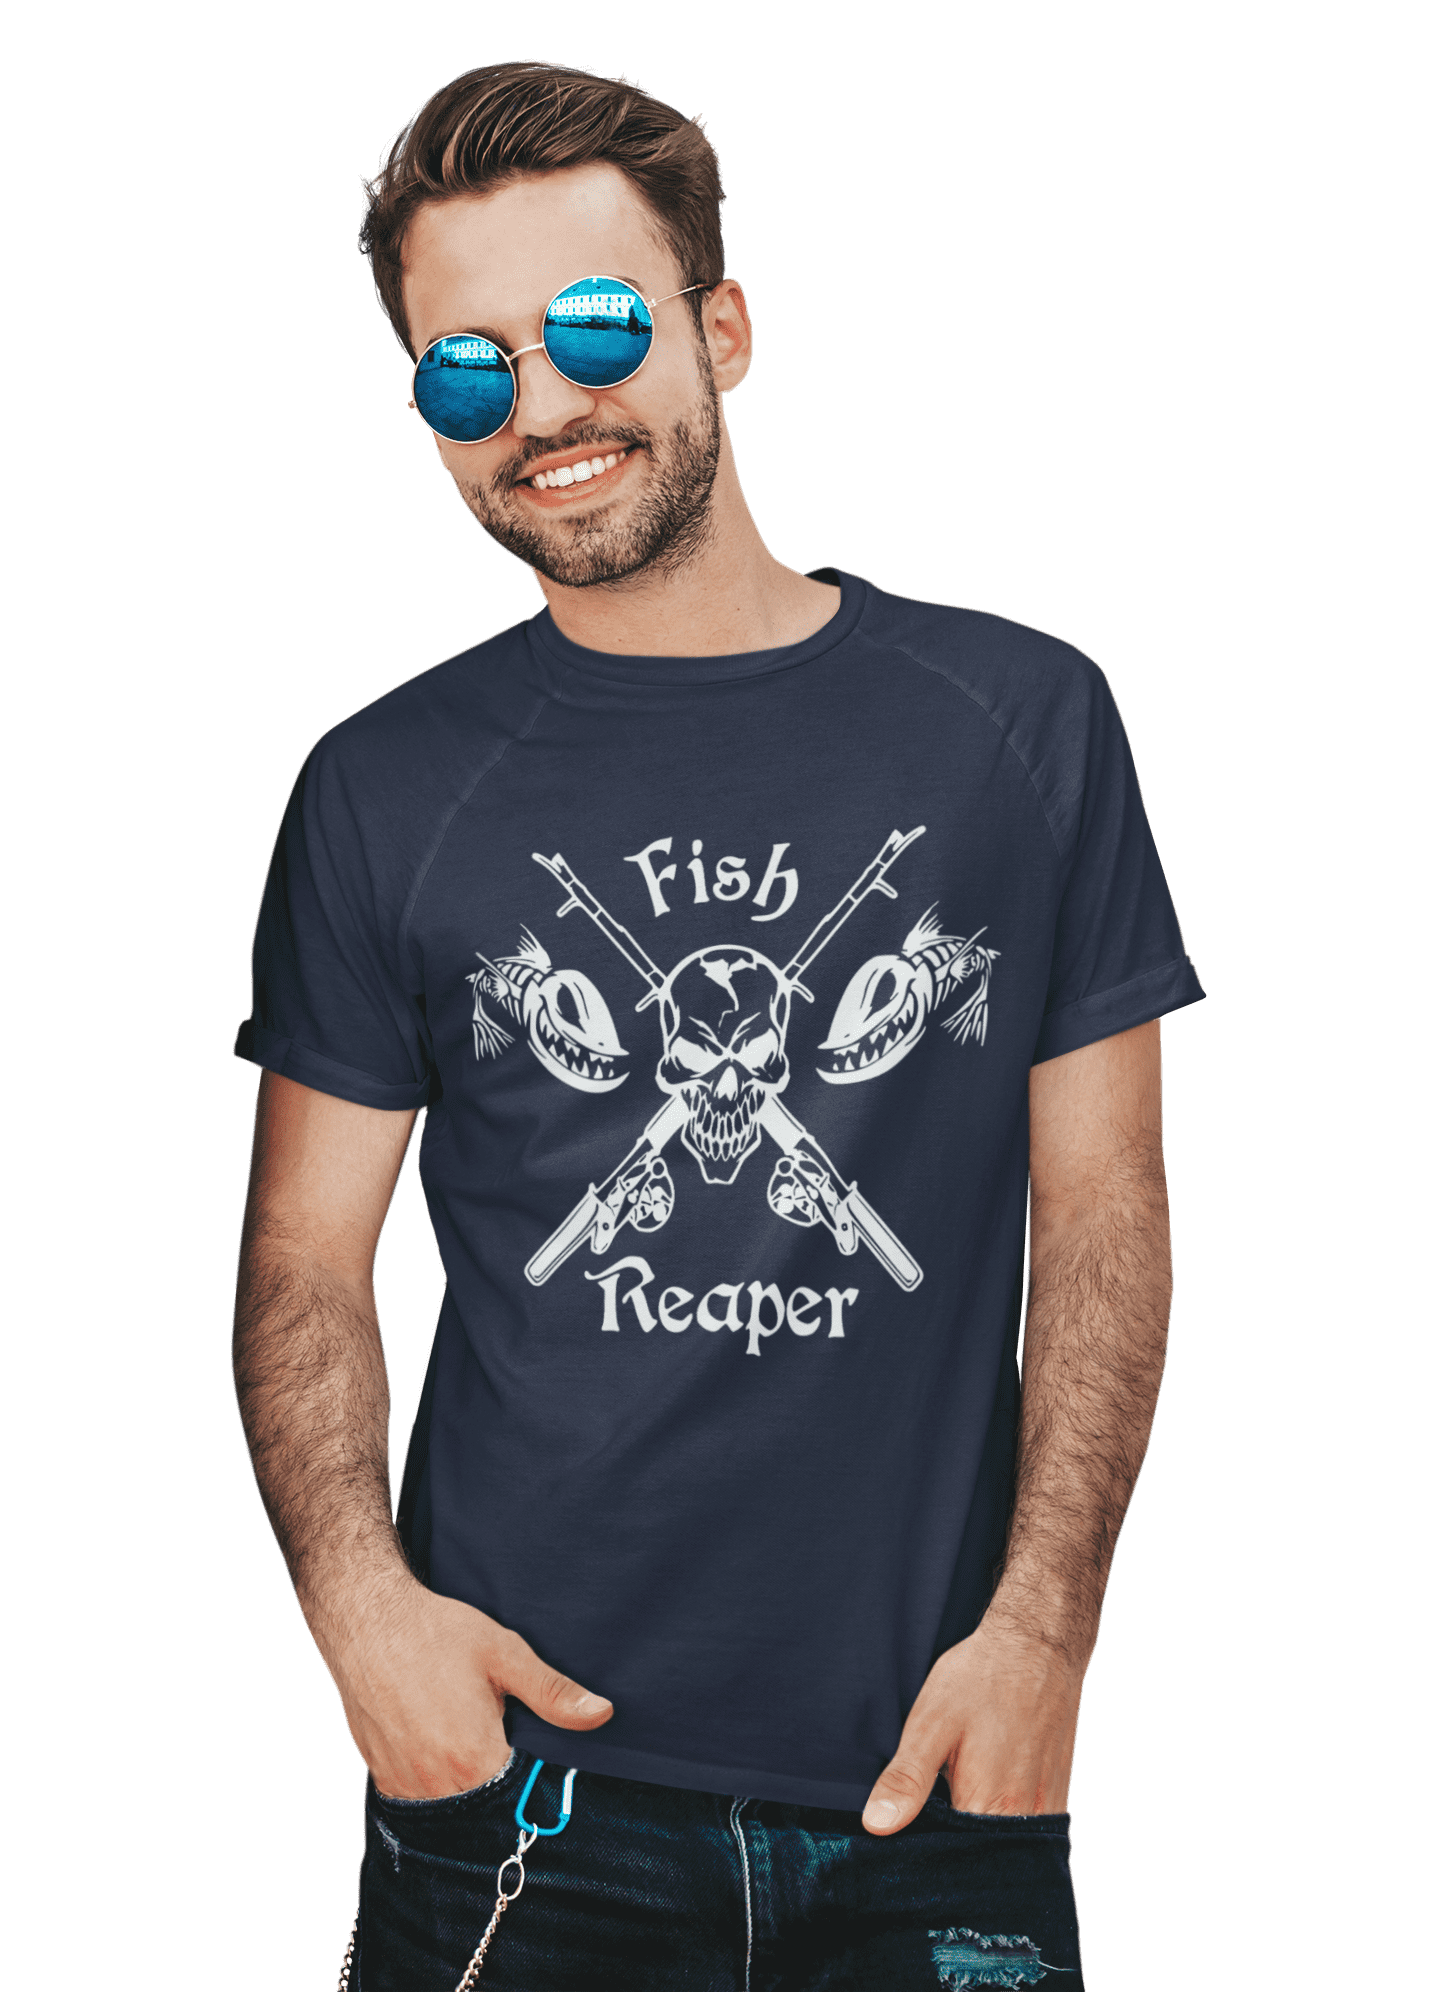 kaos fish reaper